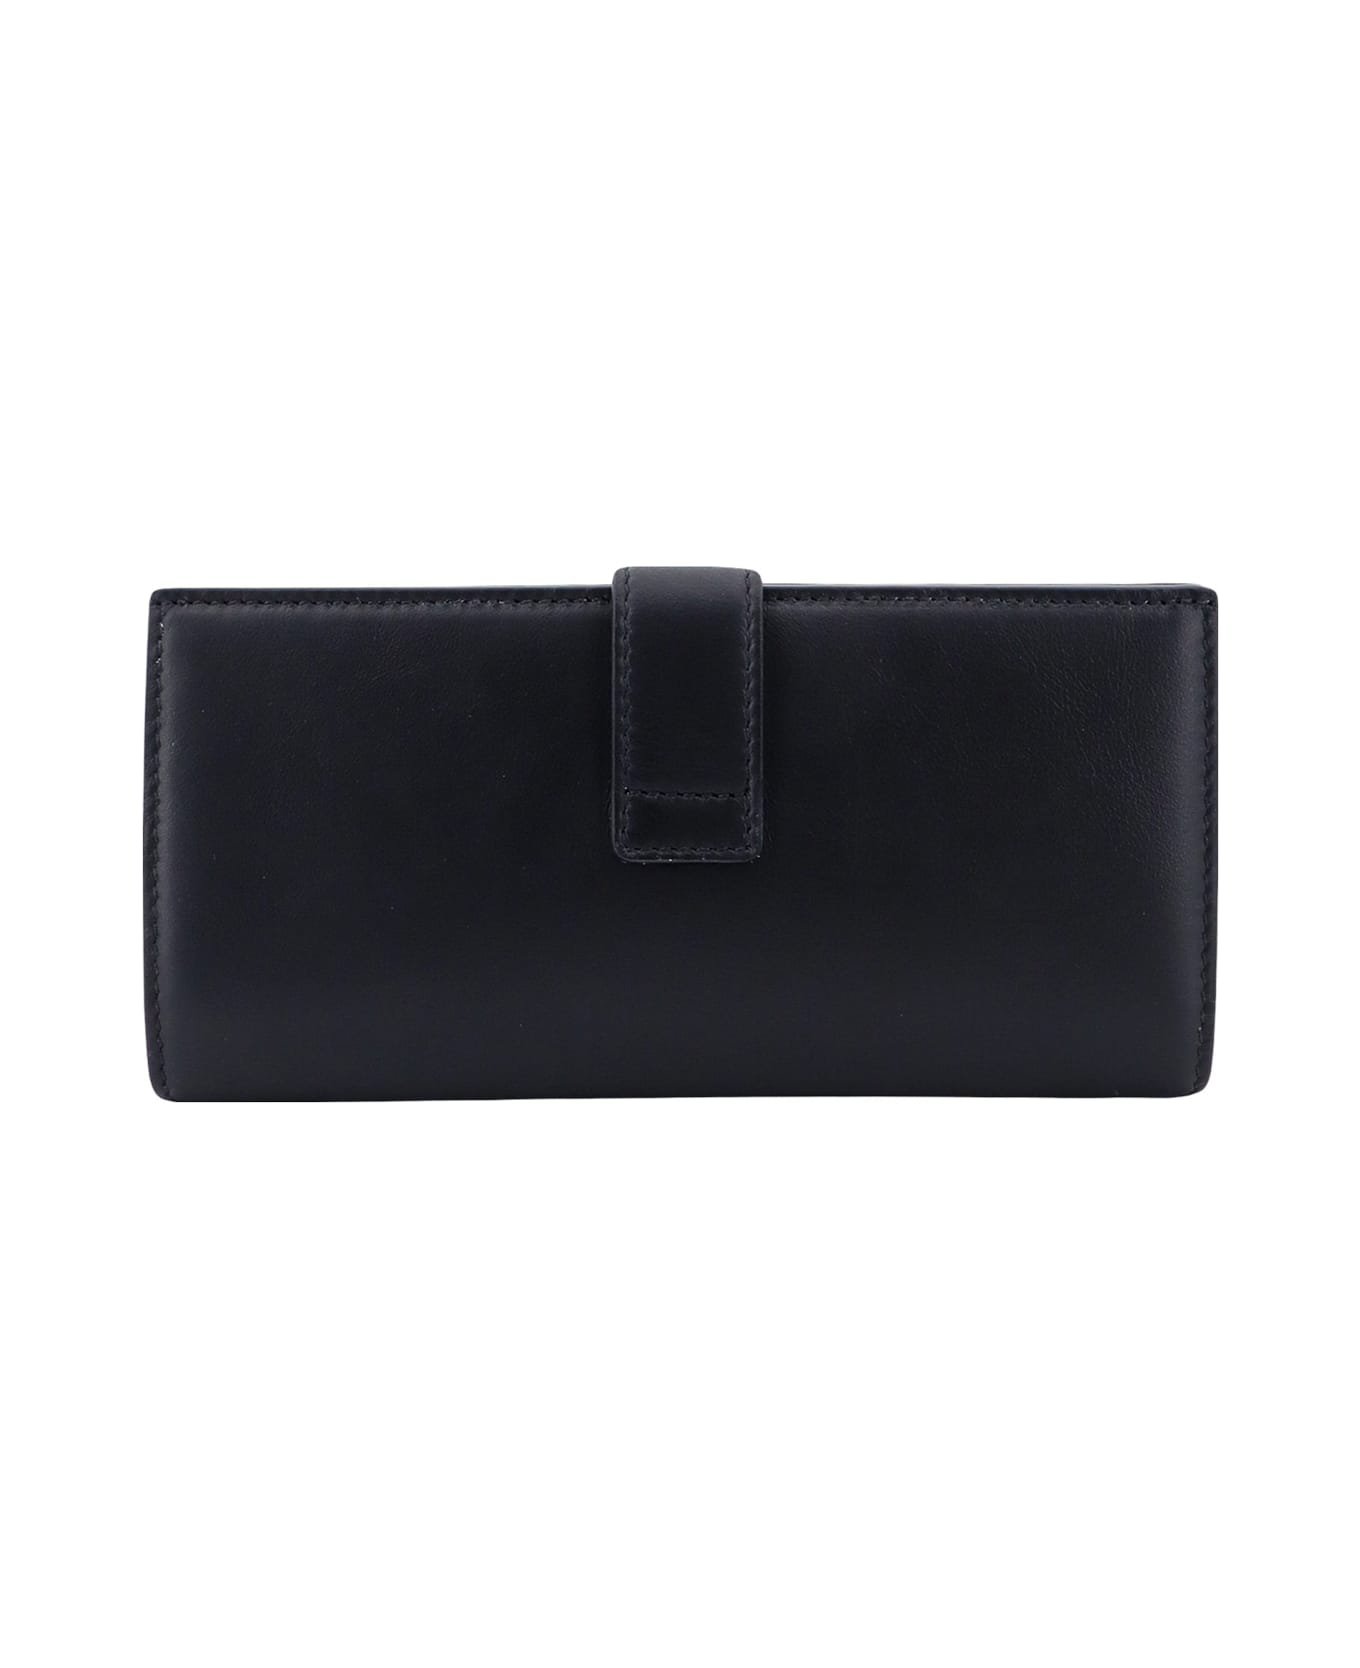 Ferragamo Wallet - Black 財布